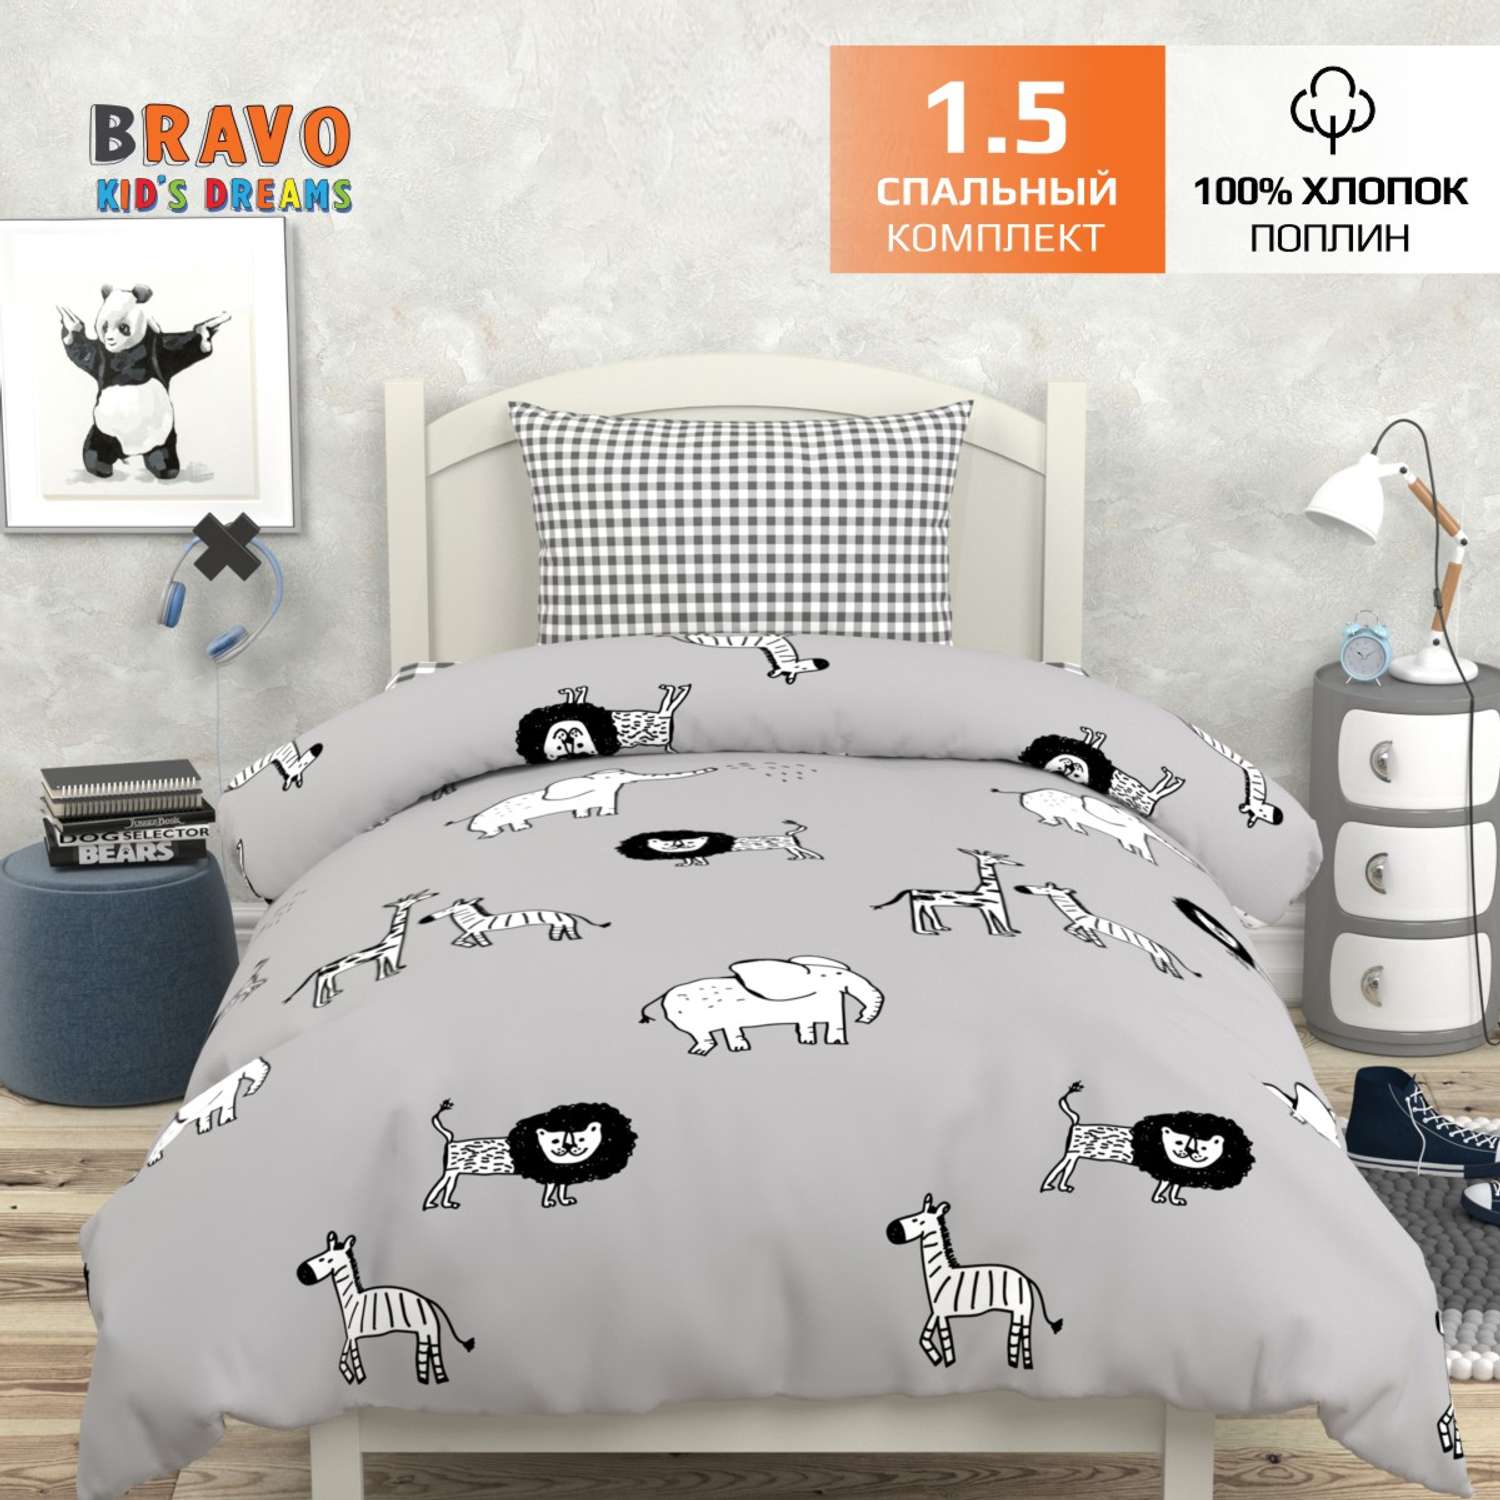 Комплект постельного белья BRAVO kids dreams Мадагаскар 1.5 спальный 3 предмета наволочка 50х70 - фото 1